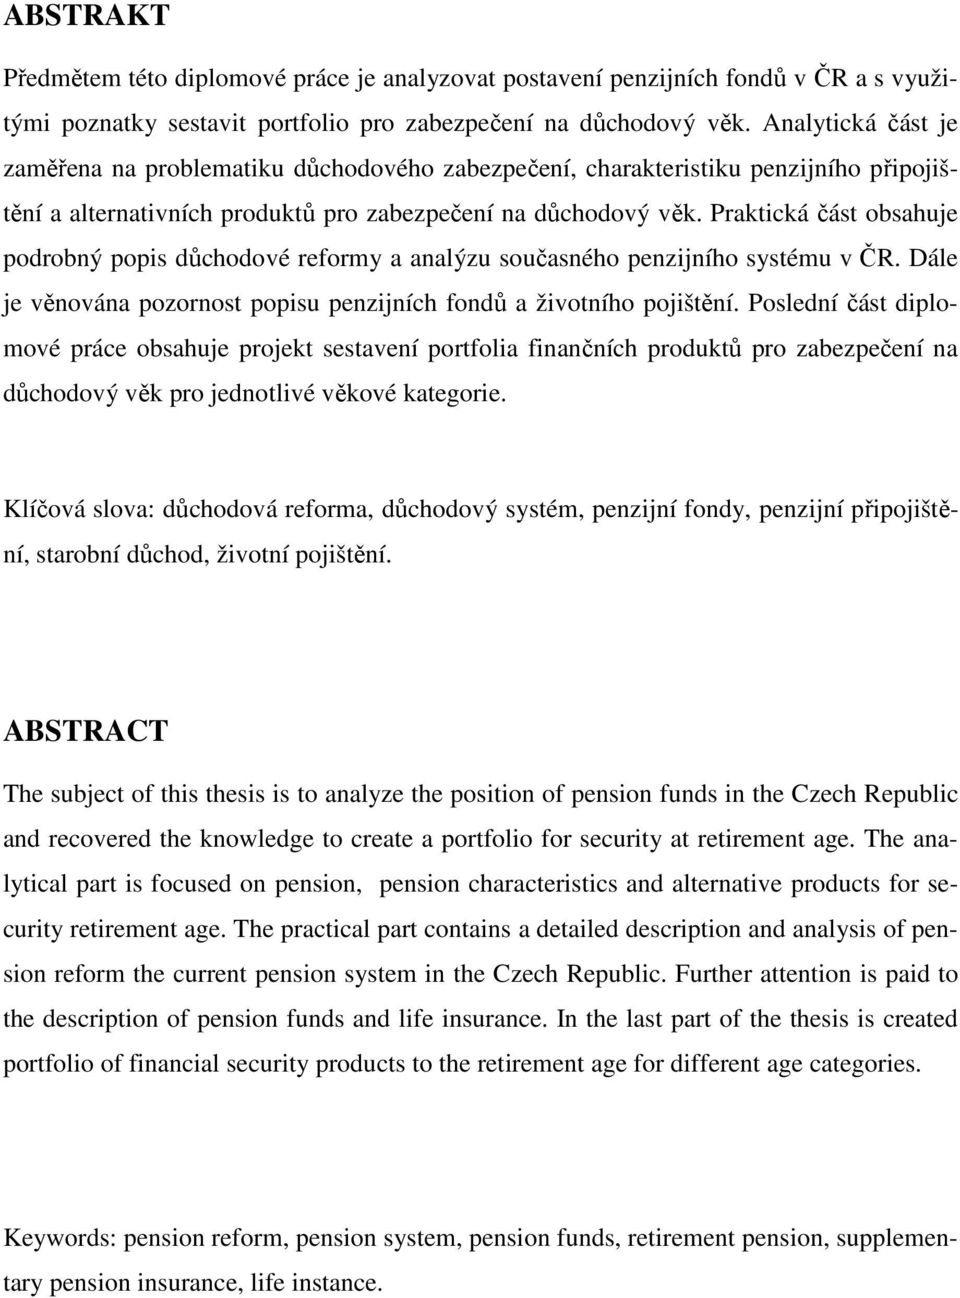 Praktická část obsahuje podrobný popis důchodové reformy a analýzu současného penzijního systému v ČR. Dále je věnována pozornost popisu penzijních fondů a životního pojištění.